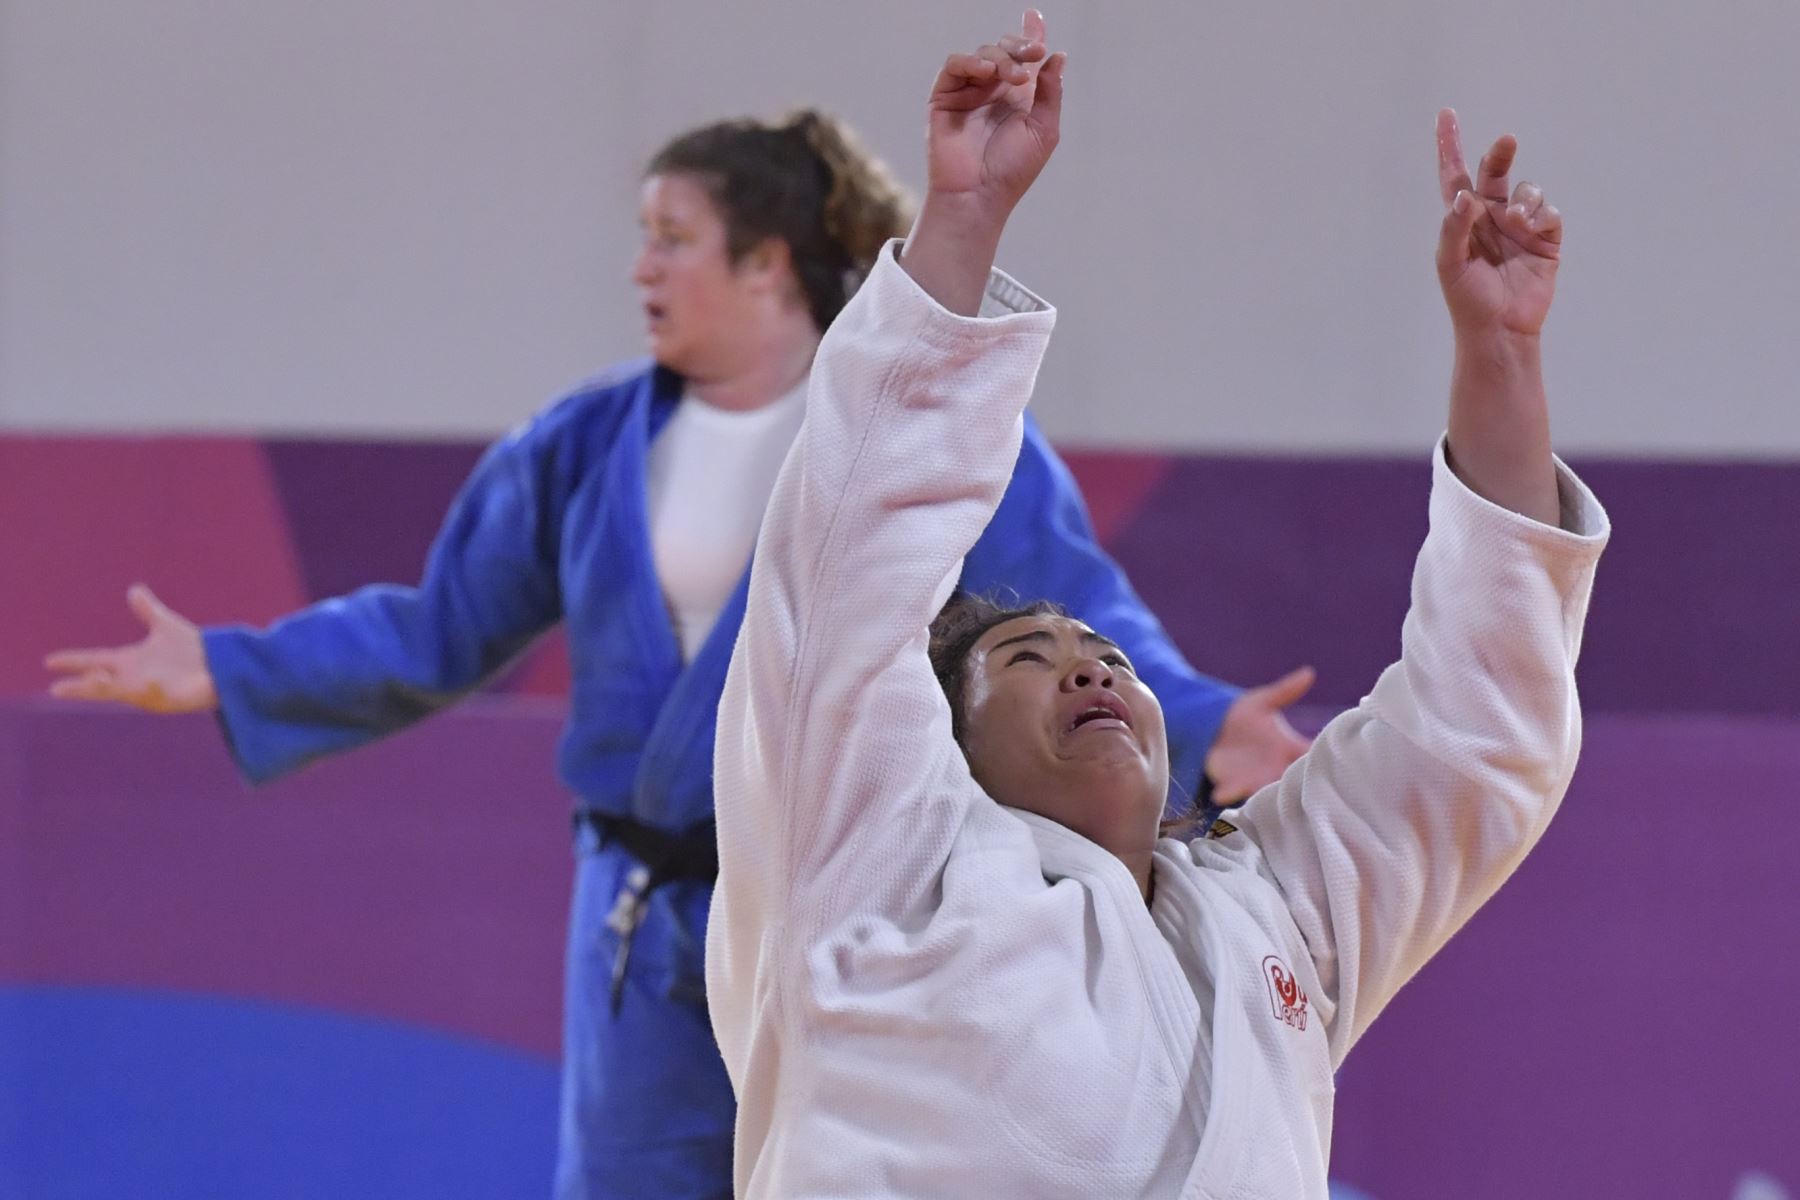 La peruana Juliana Bolívar (R) reacciona después de derrotar a la estadounidense Nina Cutro-Kelly durante una pelea por la Medalla de Bronce Femenina de 78 kg en los Juegos Panamericanos. AFP